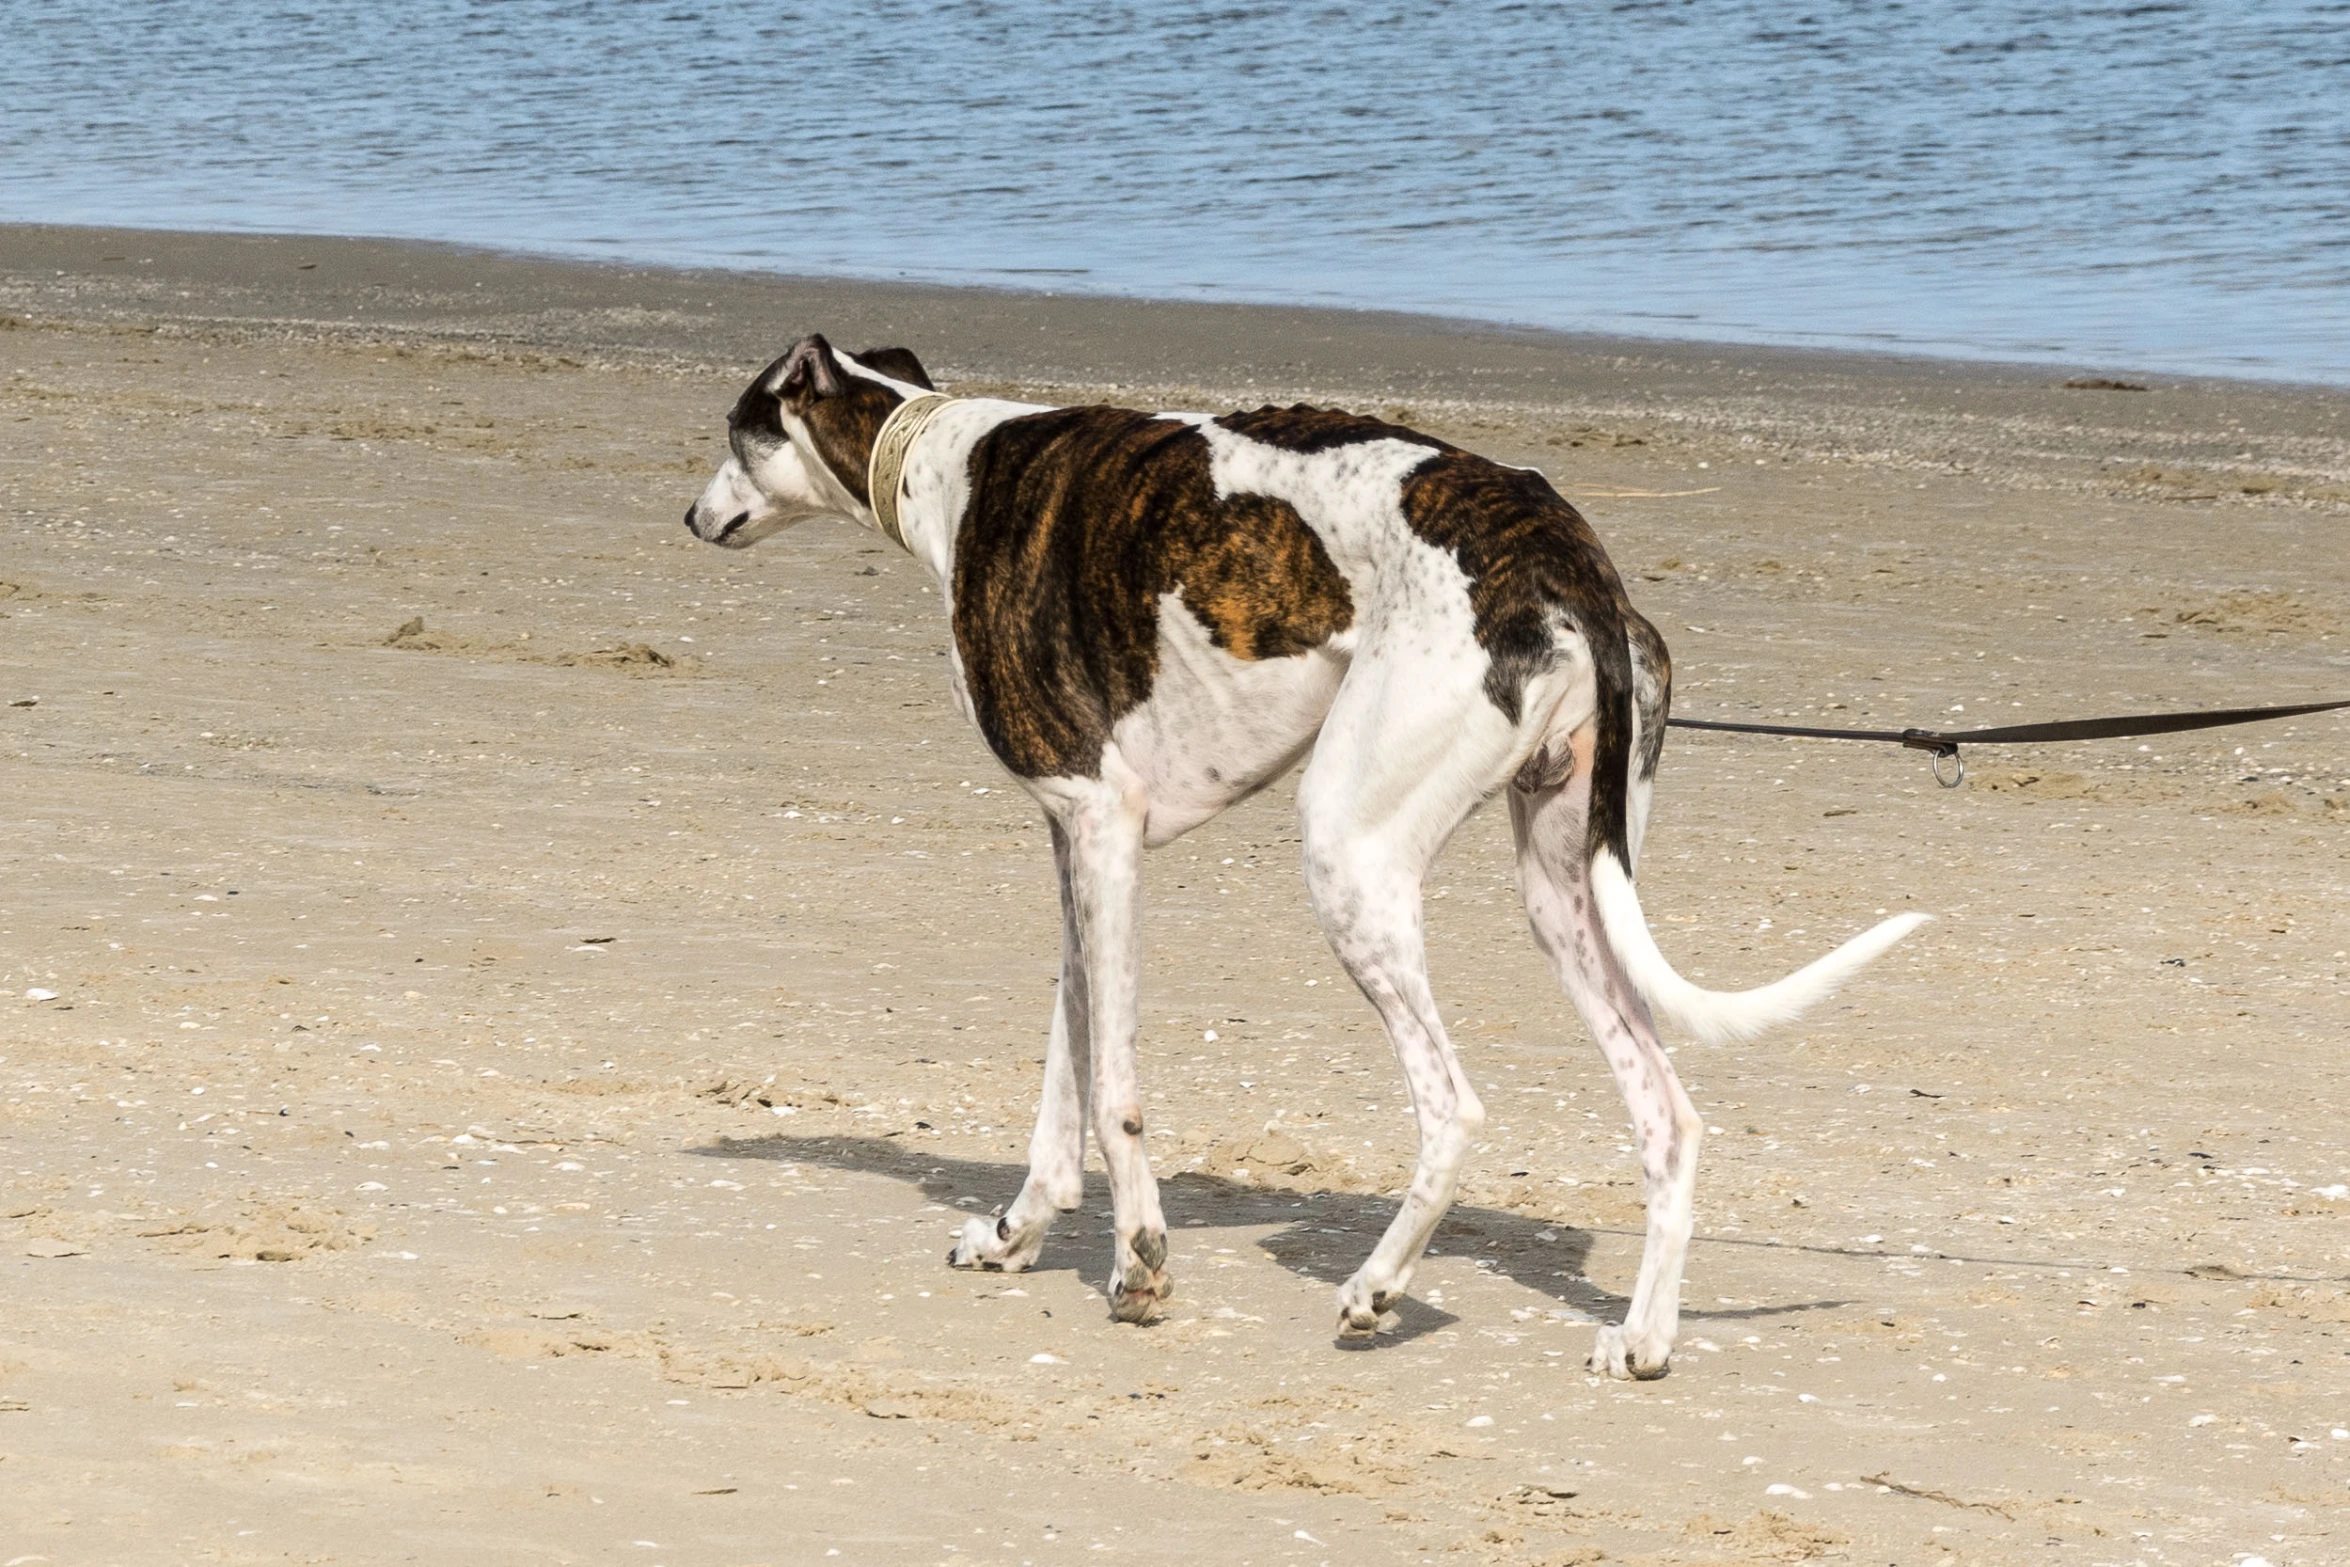 a dog is on the beach on a leash